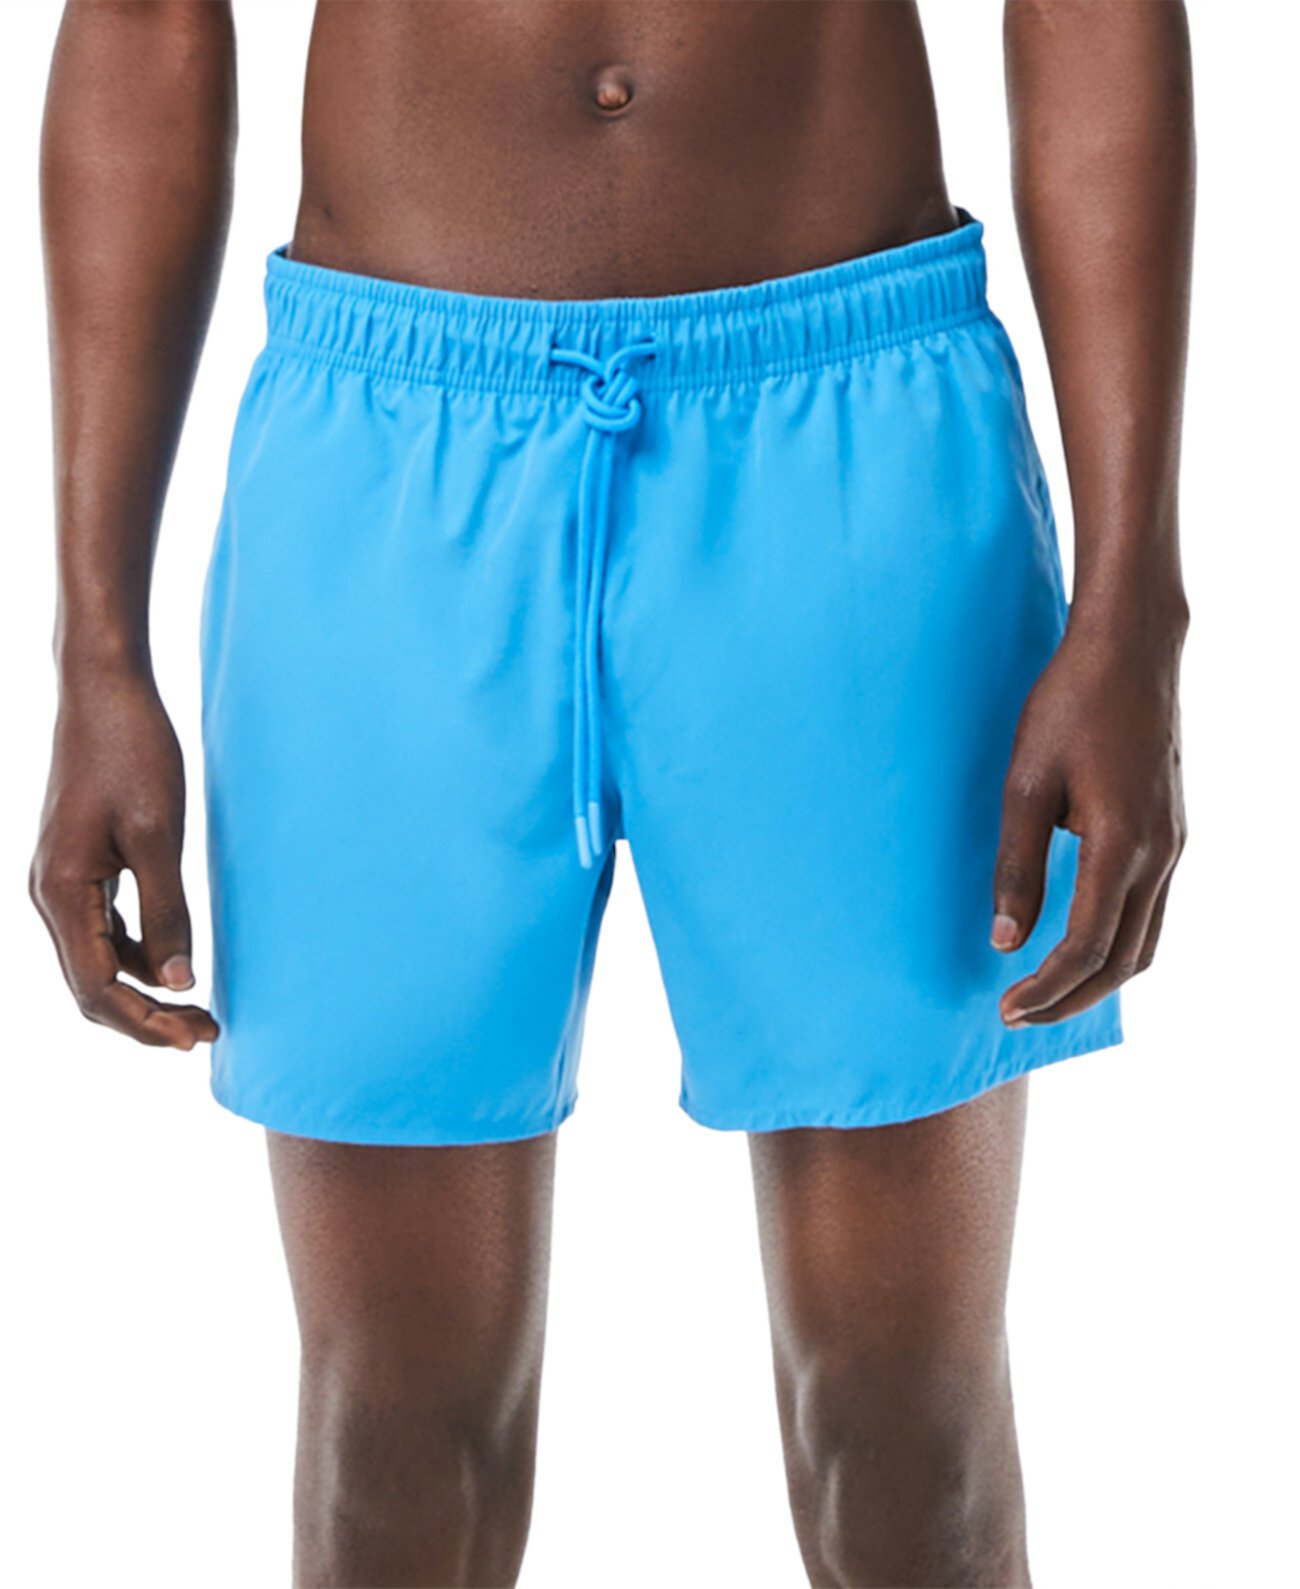 Мужские легкие быстросохнущие шорты для плавания Lacoste